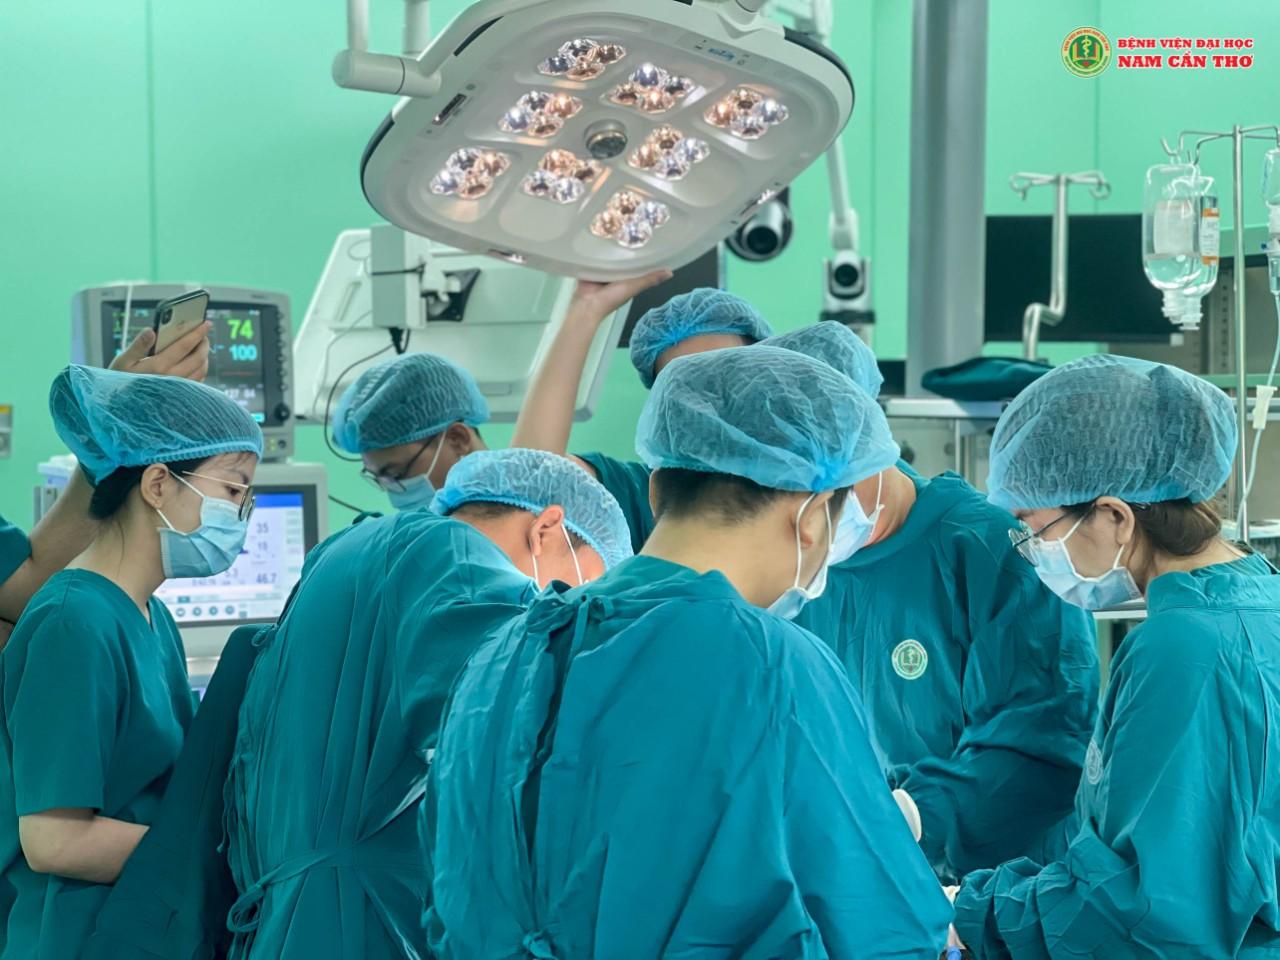 Các bác sĩ Bệnh viện Đại học Nam Cần Thơ tiến hành phẫu thuật.